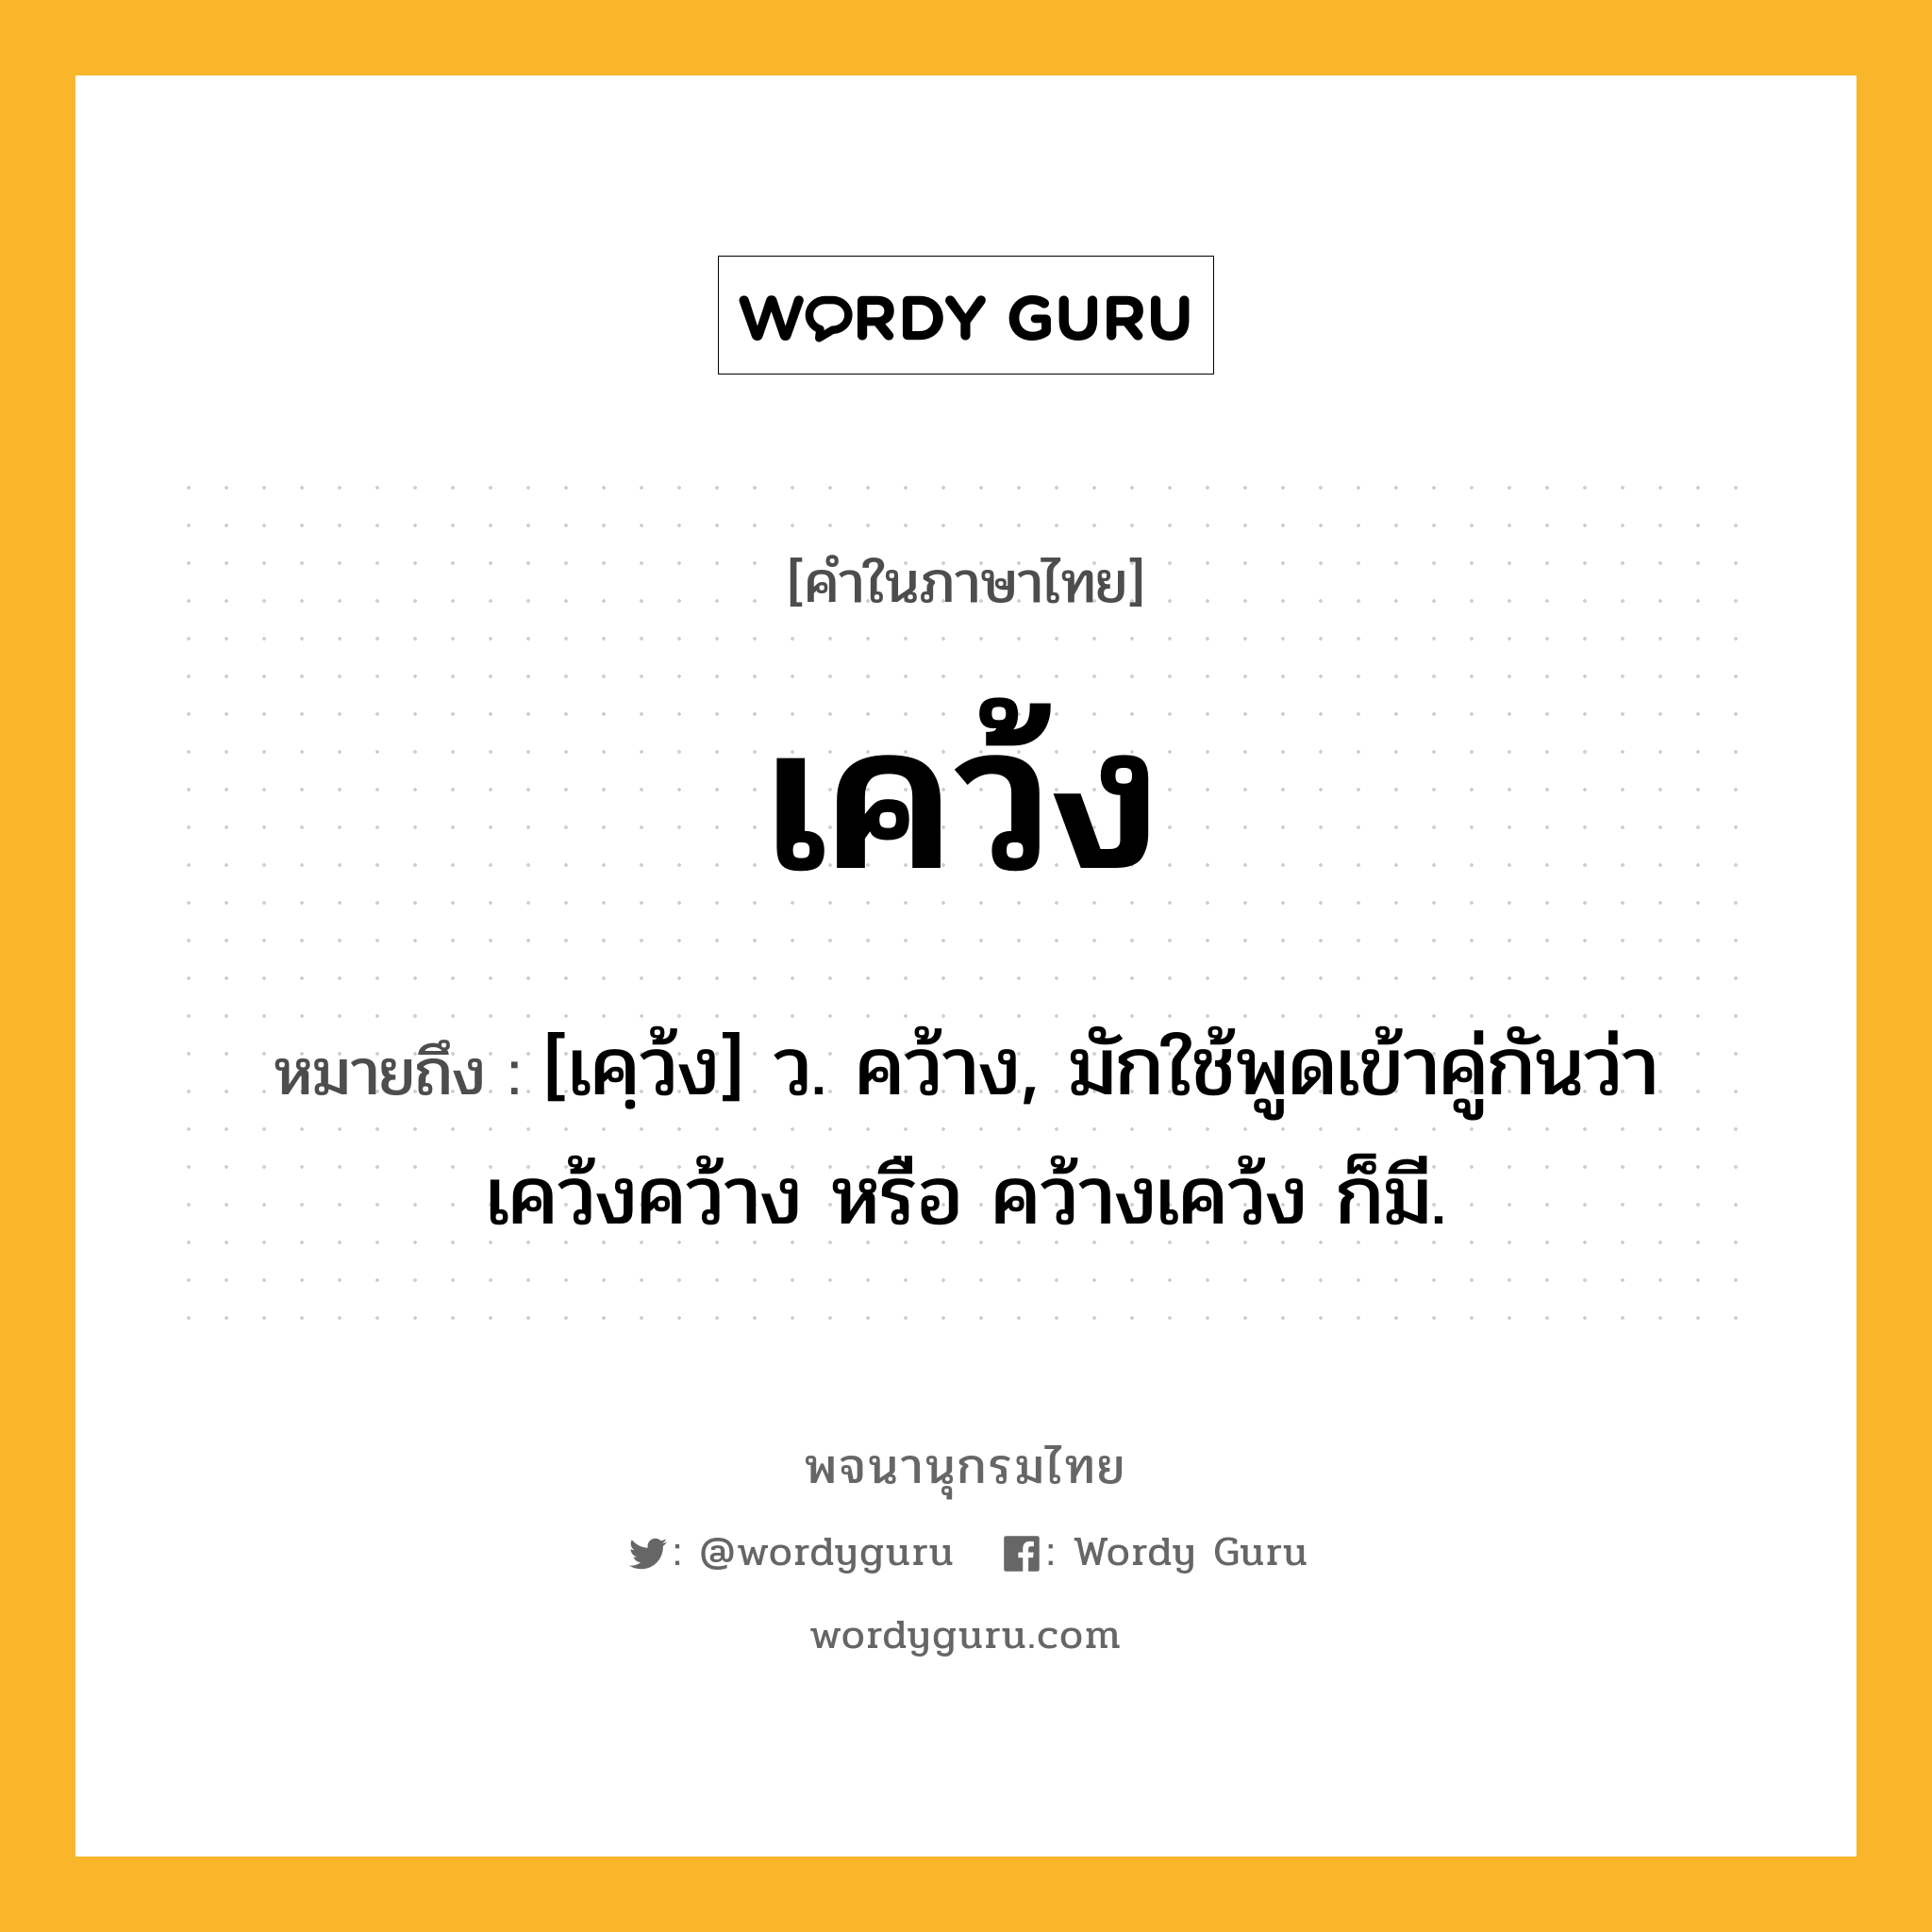 เคว้ง หมายถึงอะไร?, คำในภาษาไทย เคว้ง หมายถึง [เคฺว้ง] ว. คว้าง, มักใช้พูดเข้าคู่กันว่า เคว้งคว้าง หรือ คว้างเคว้ง ก็มี.